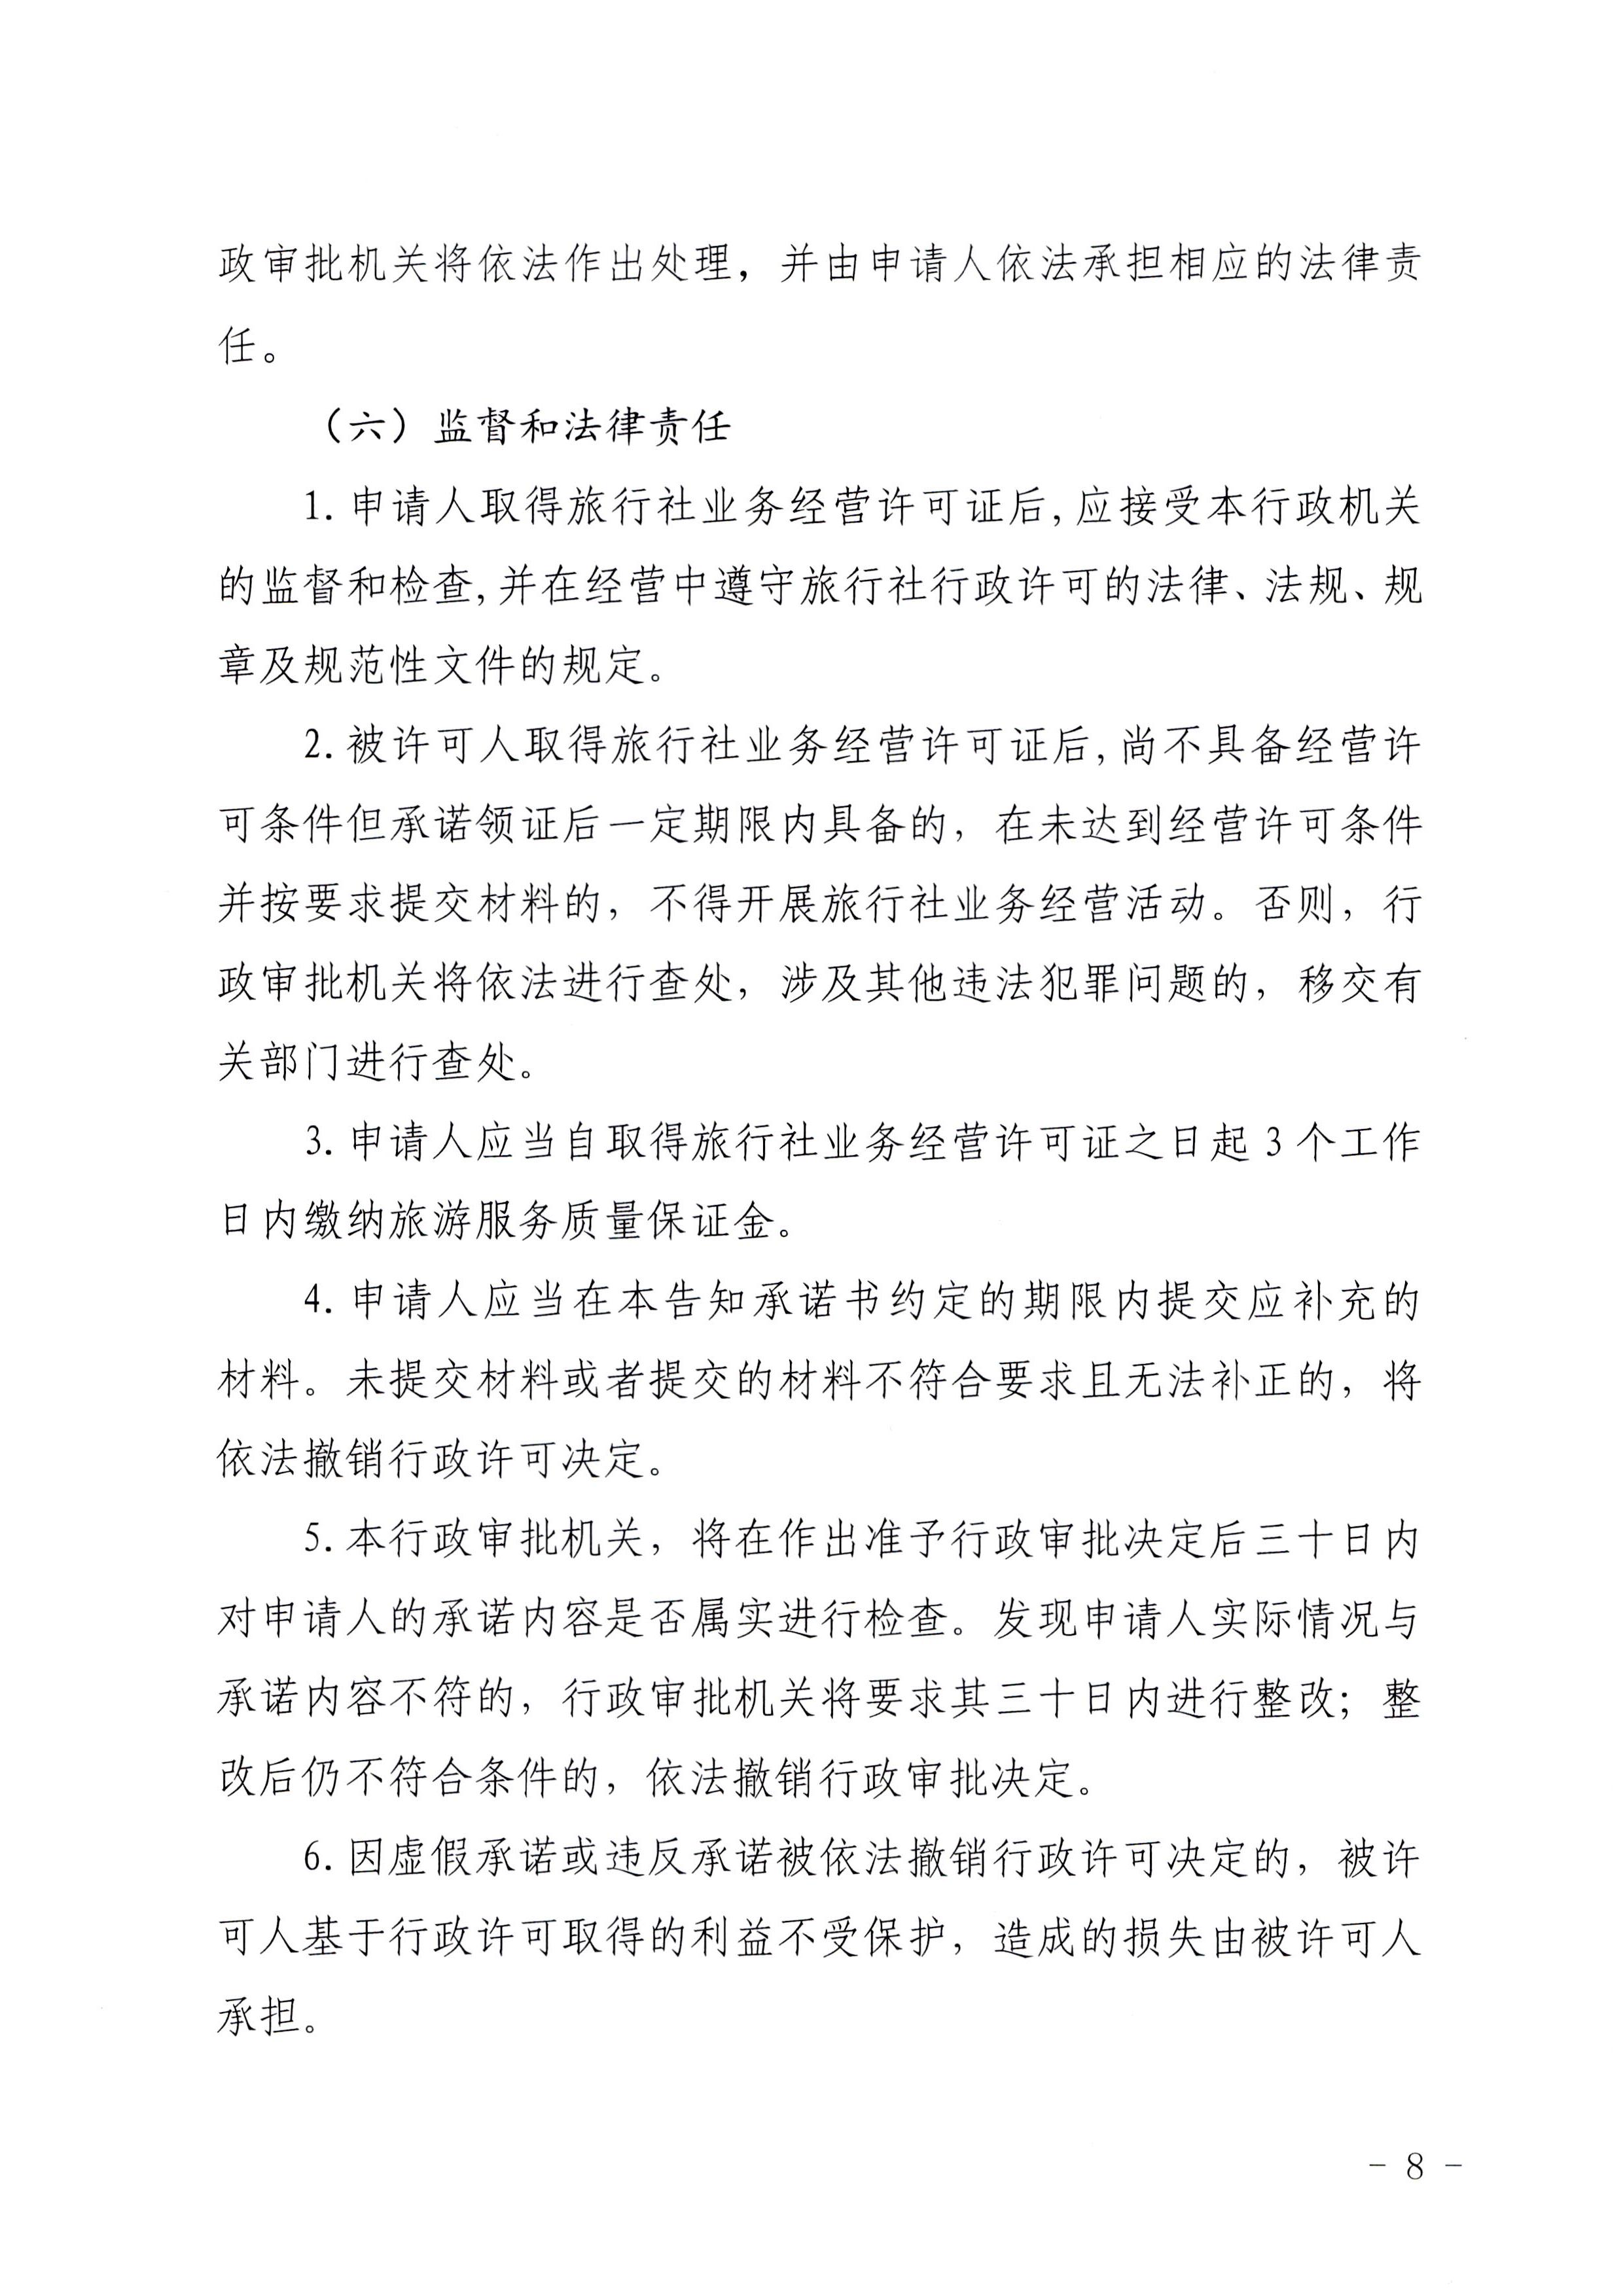 广东省文化和旅游厅印发证照分离改革实施方案的通知_页面_44.jpg